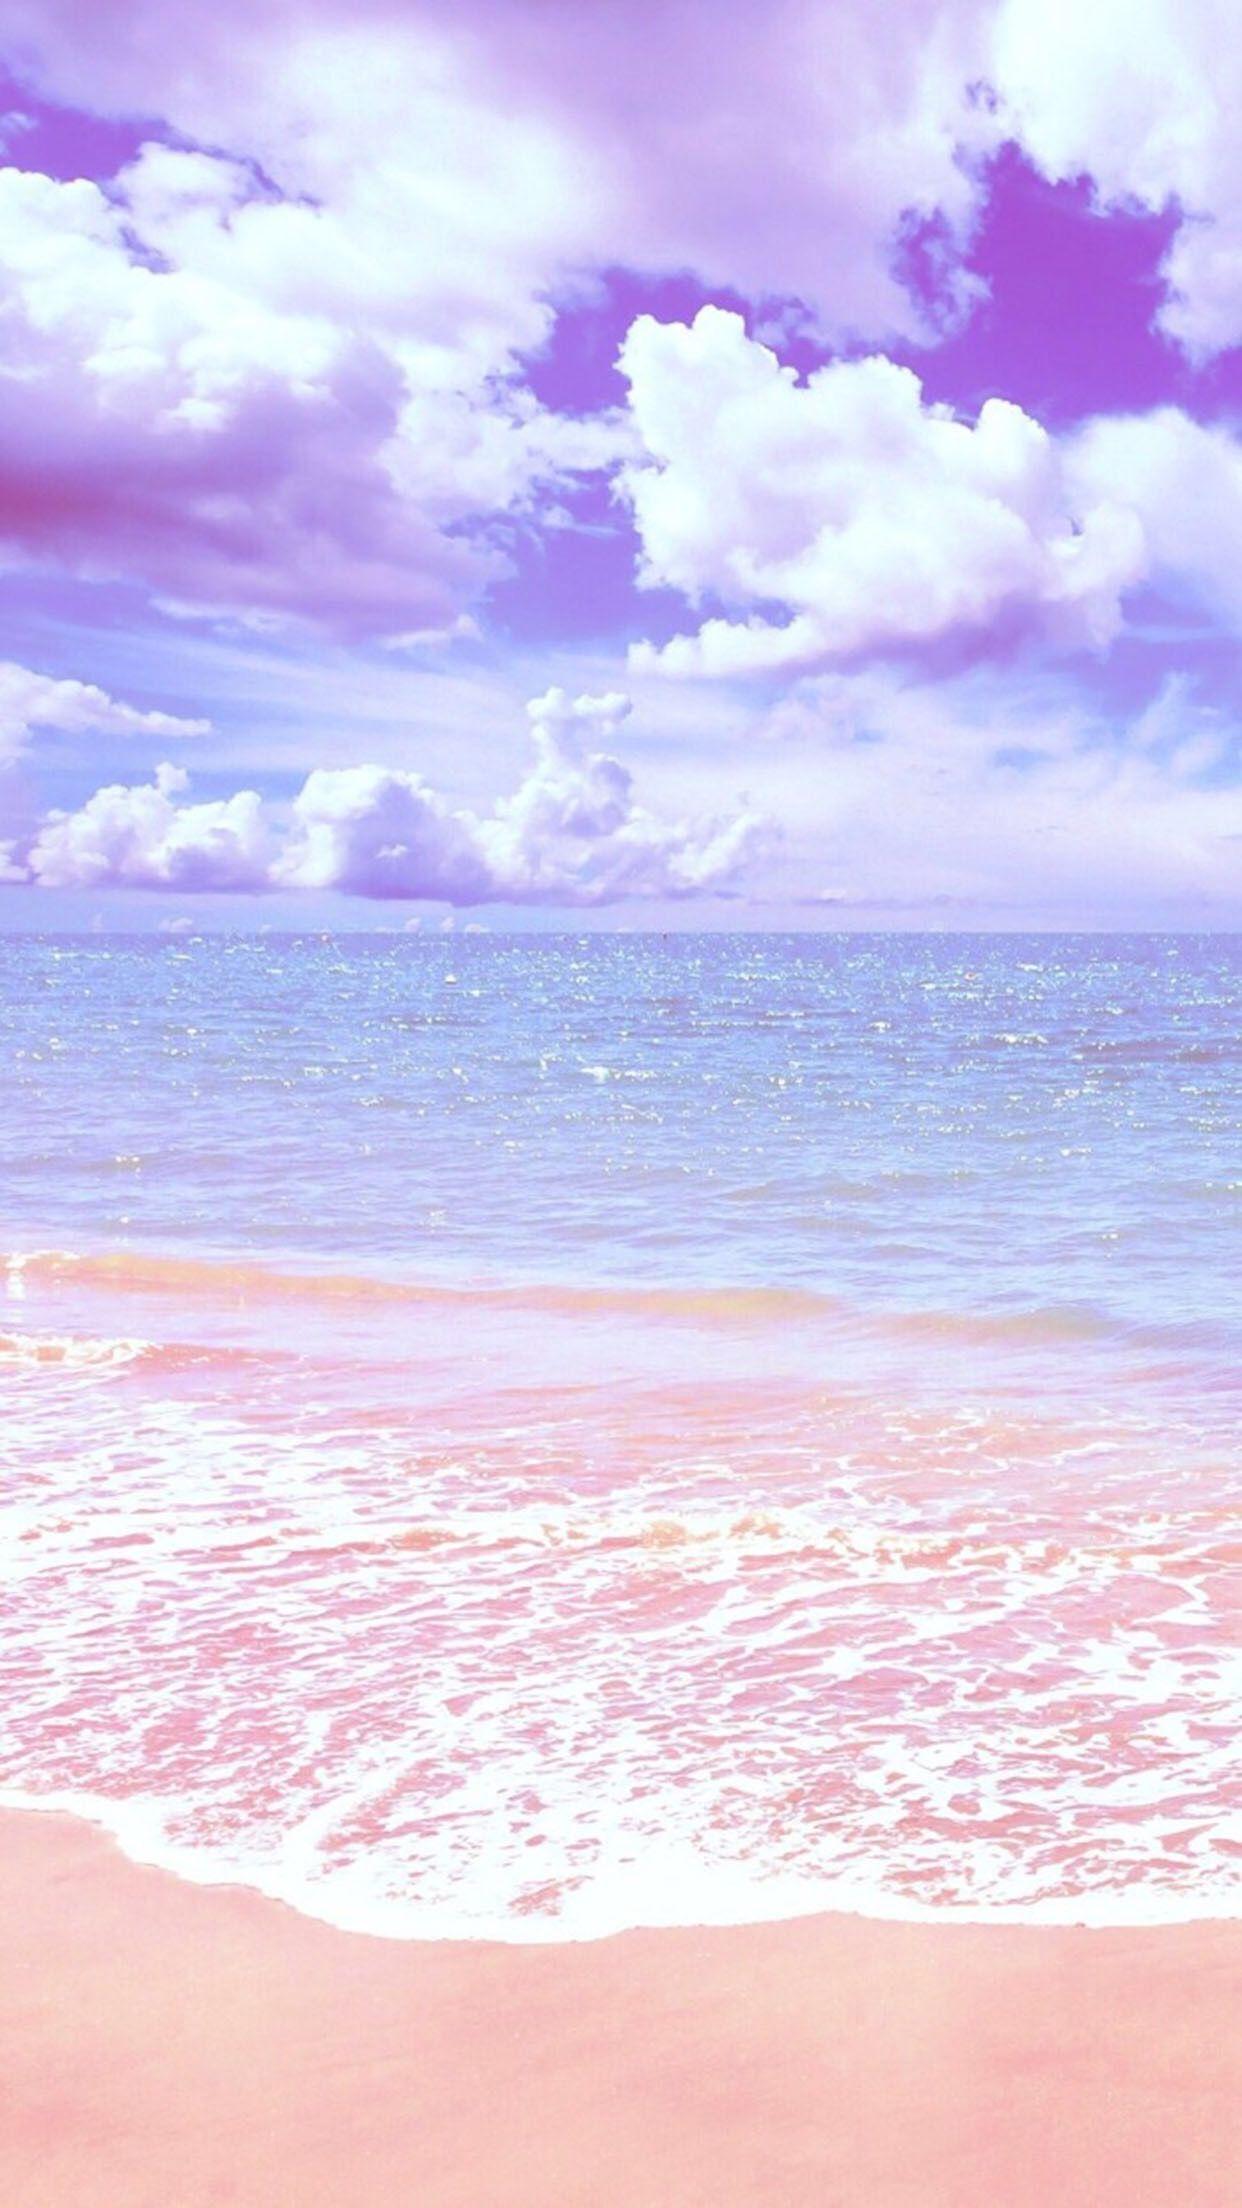 Summer Pink Beach Wallpapers - Top Free Summer Pink Beach Backgrounds ...